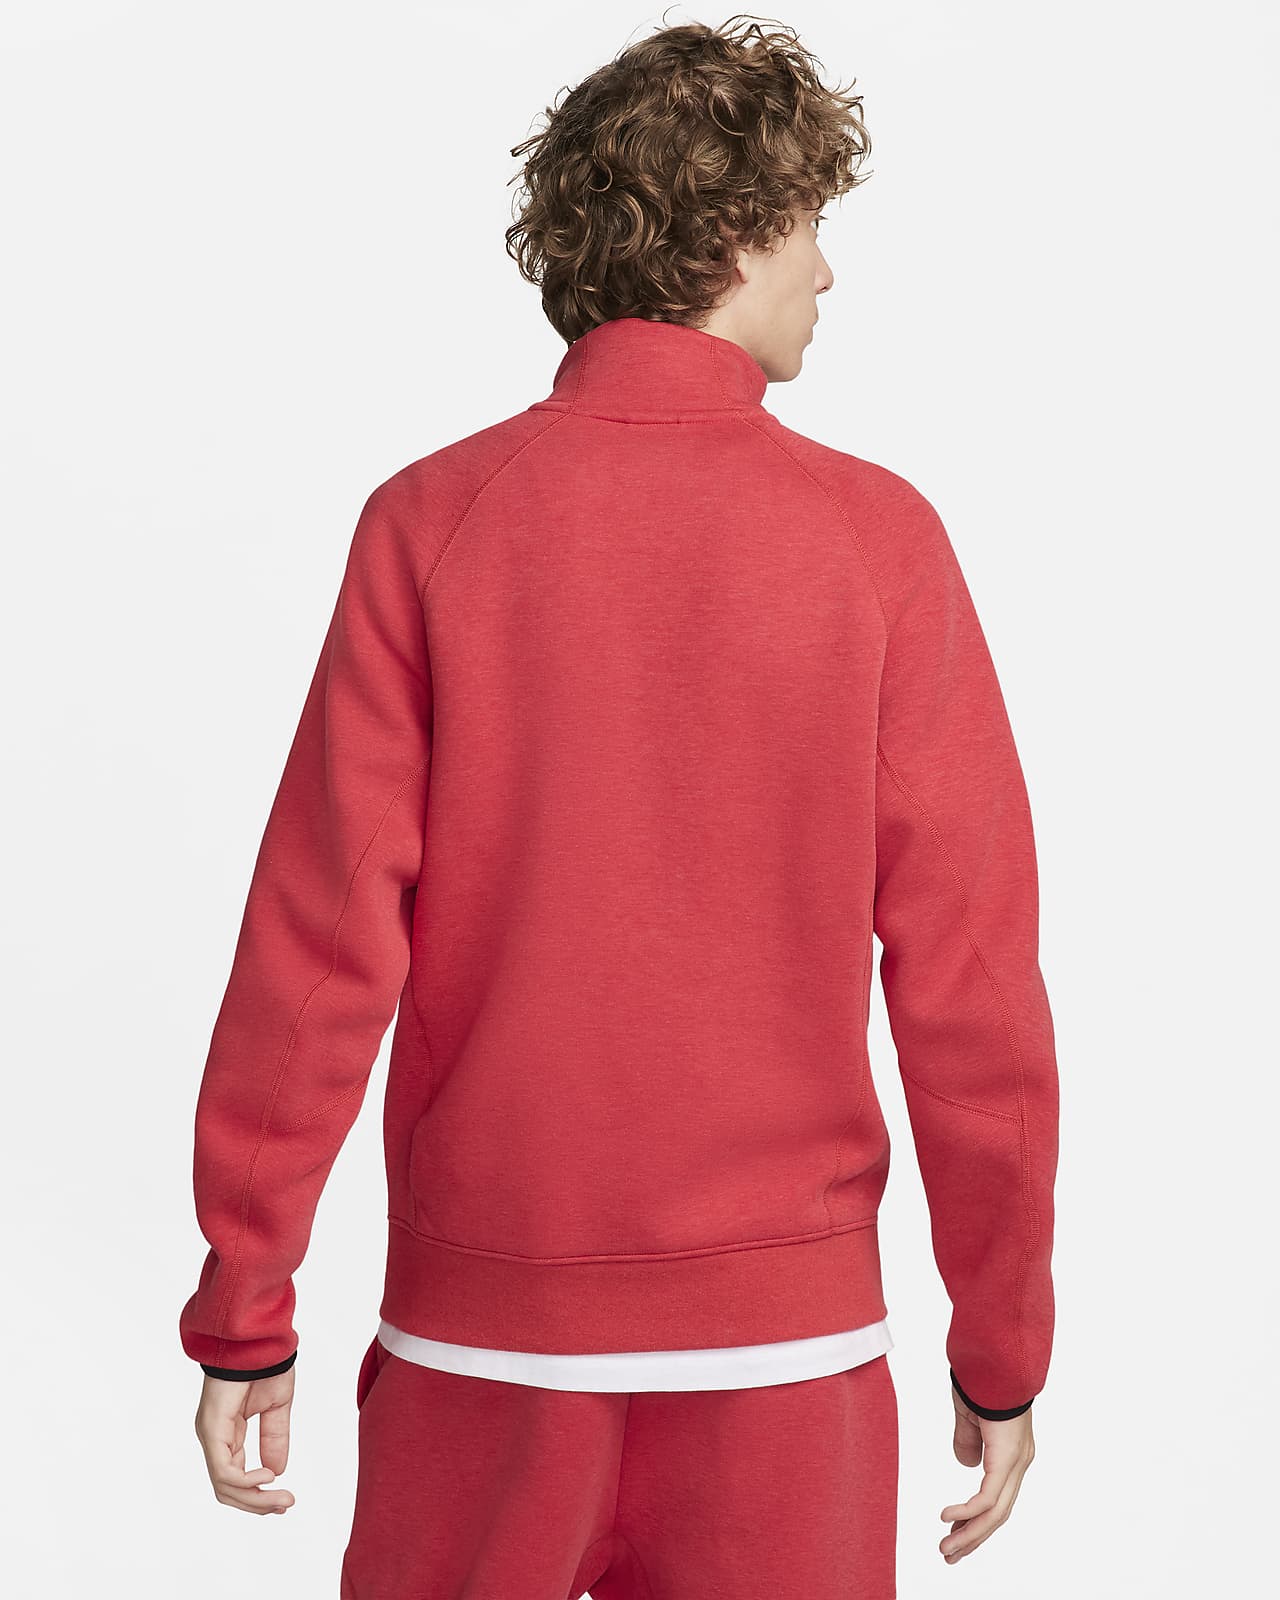 Nike Tech Fleece Grey Shorts - Puffer Reds